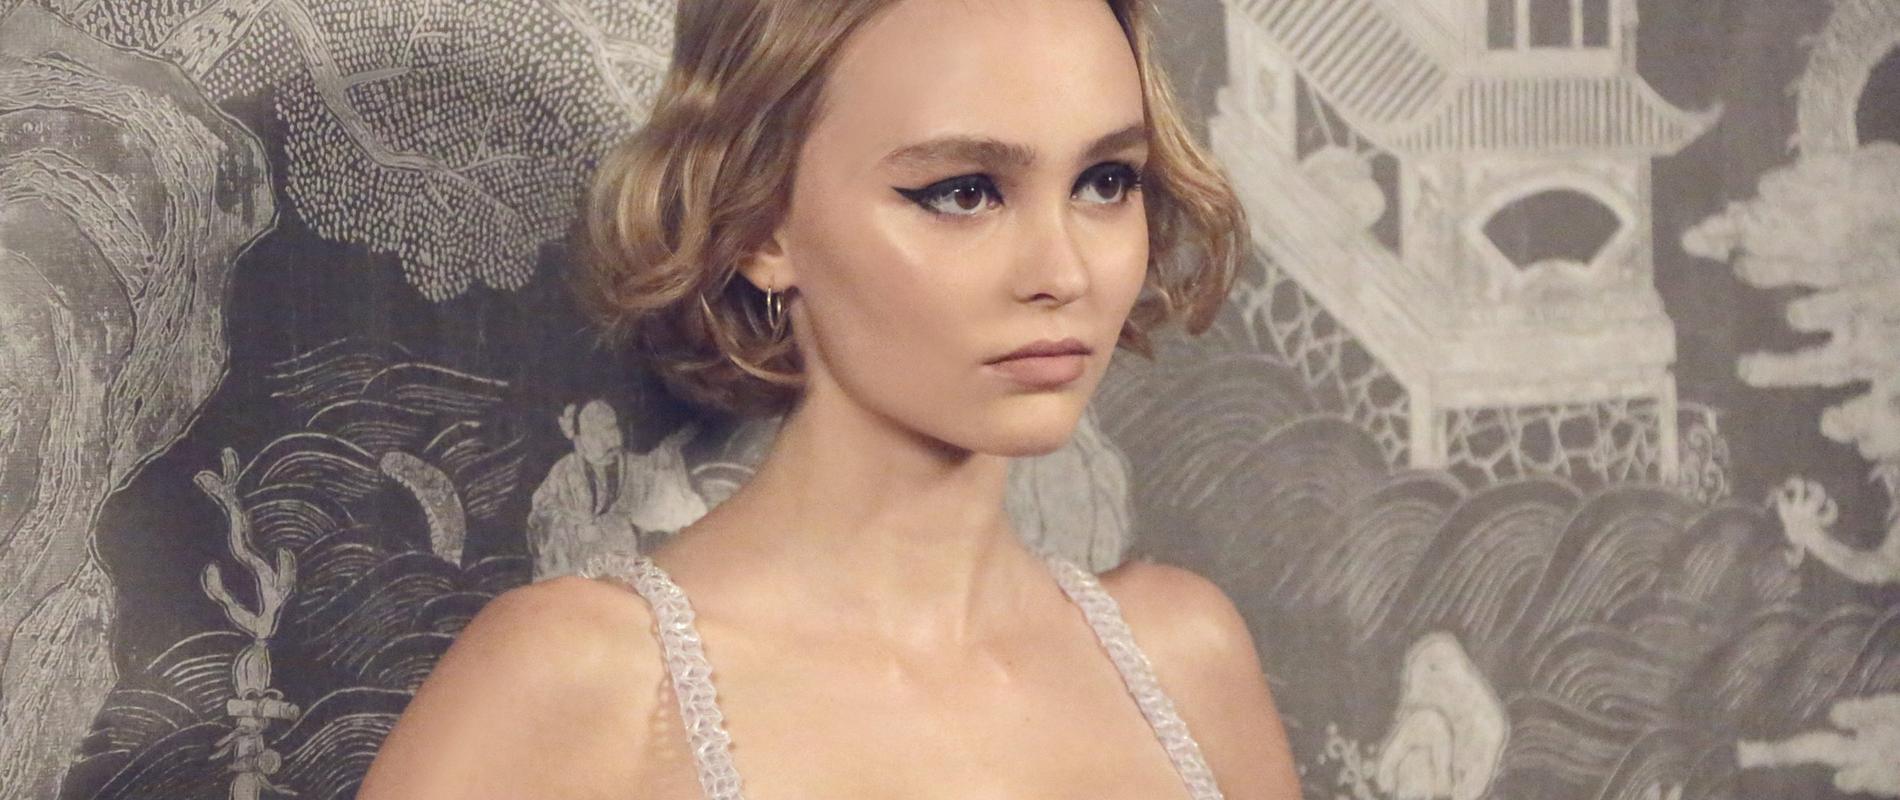 Lily-Rose Depp incarne le visage du nouveau Chanel n° 5, L’Eau